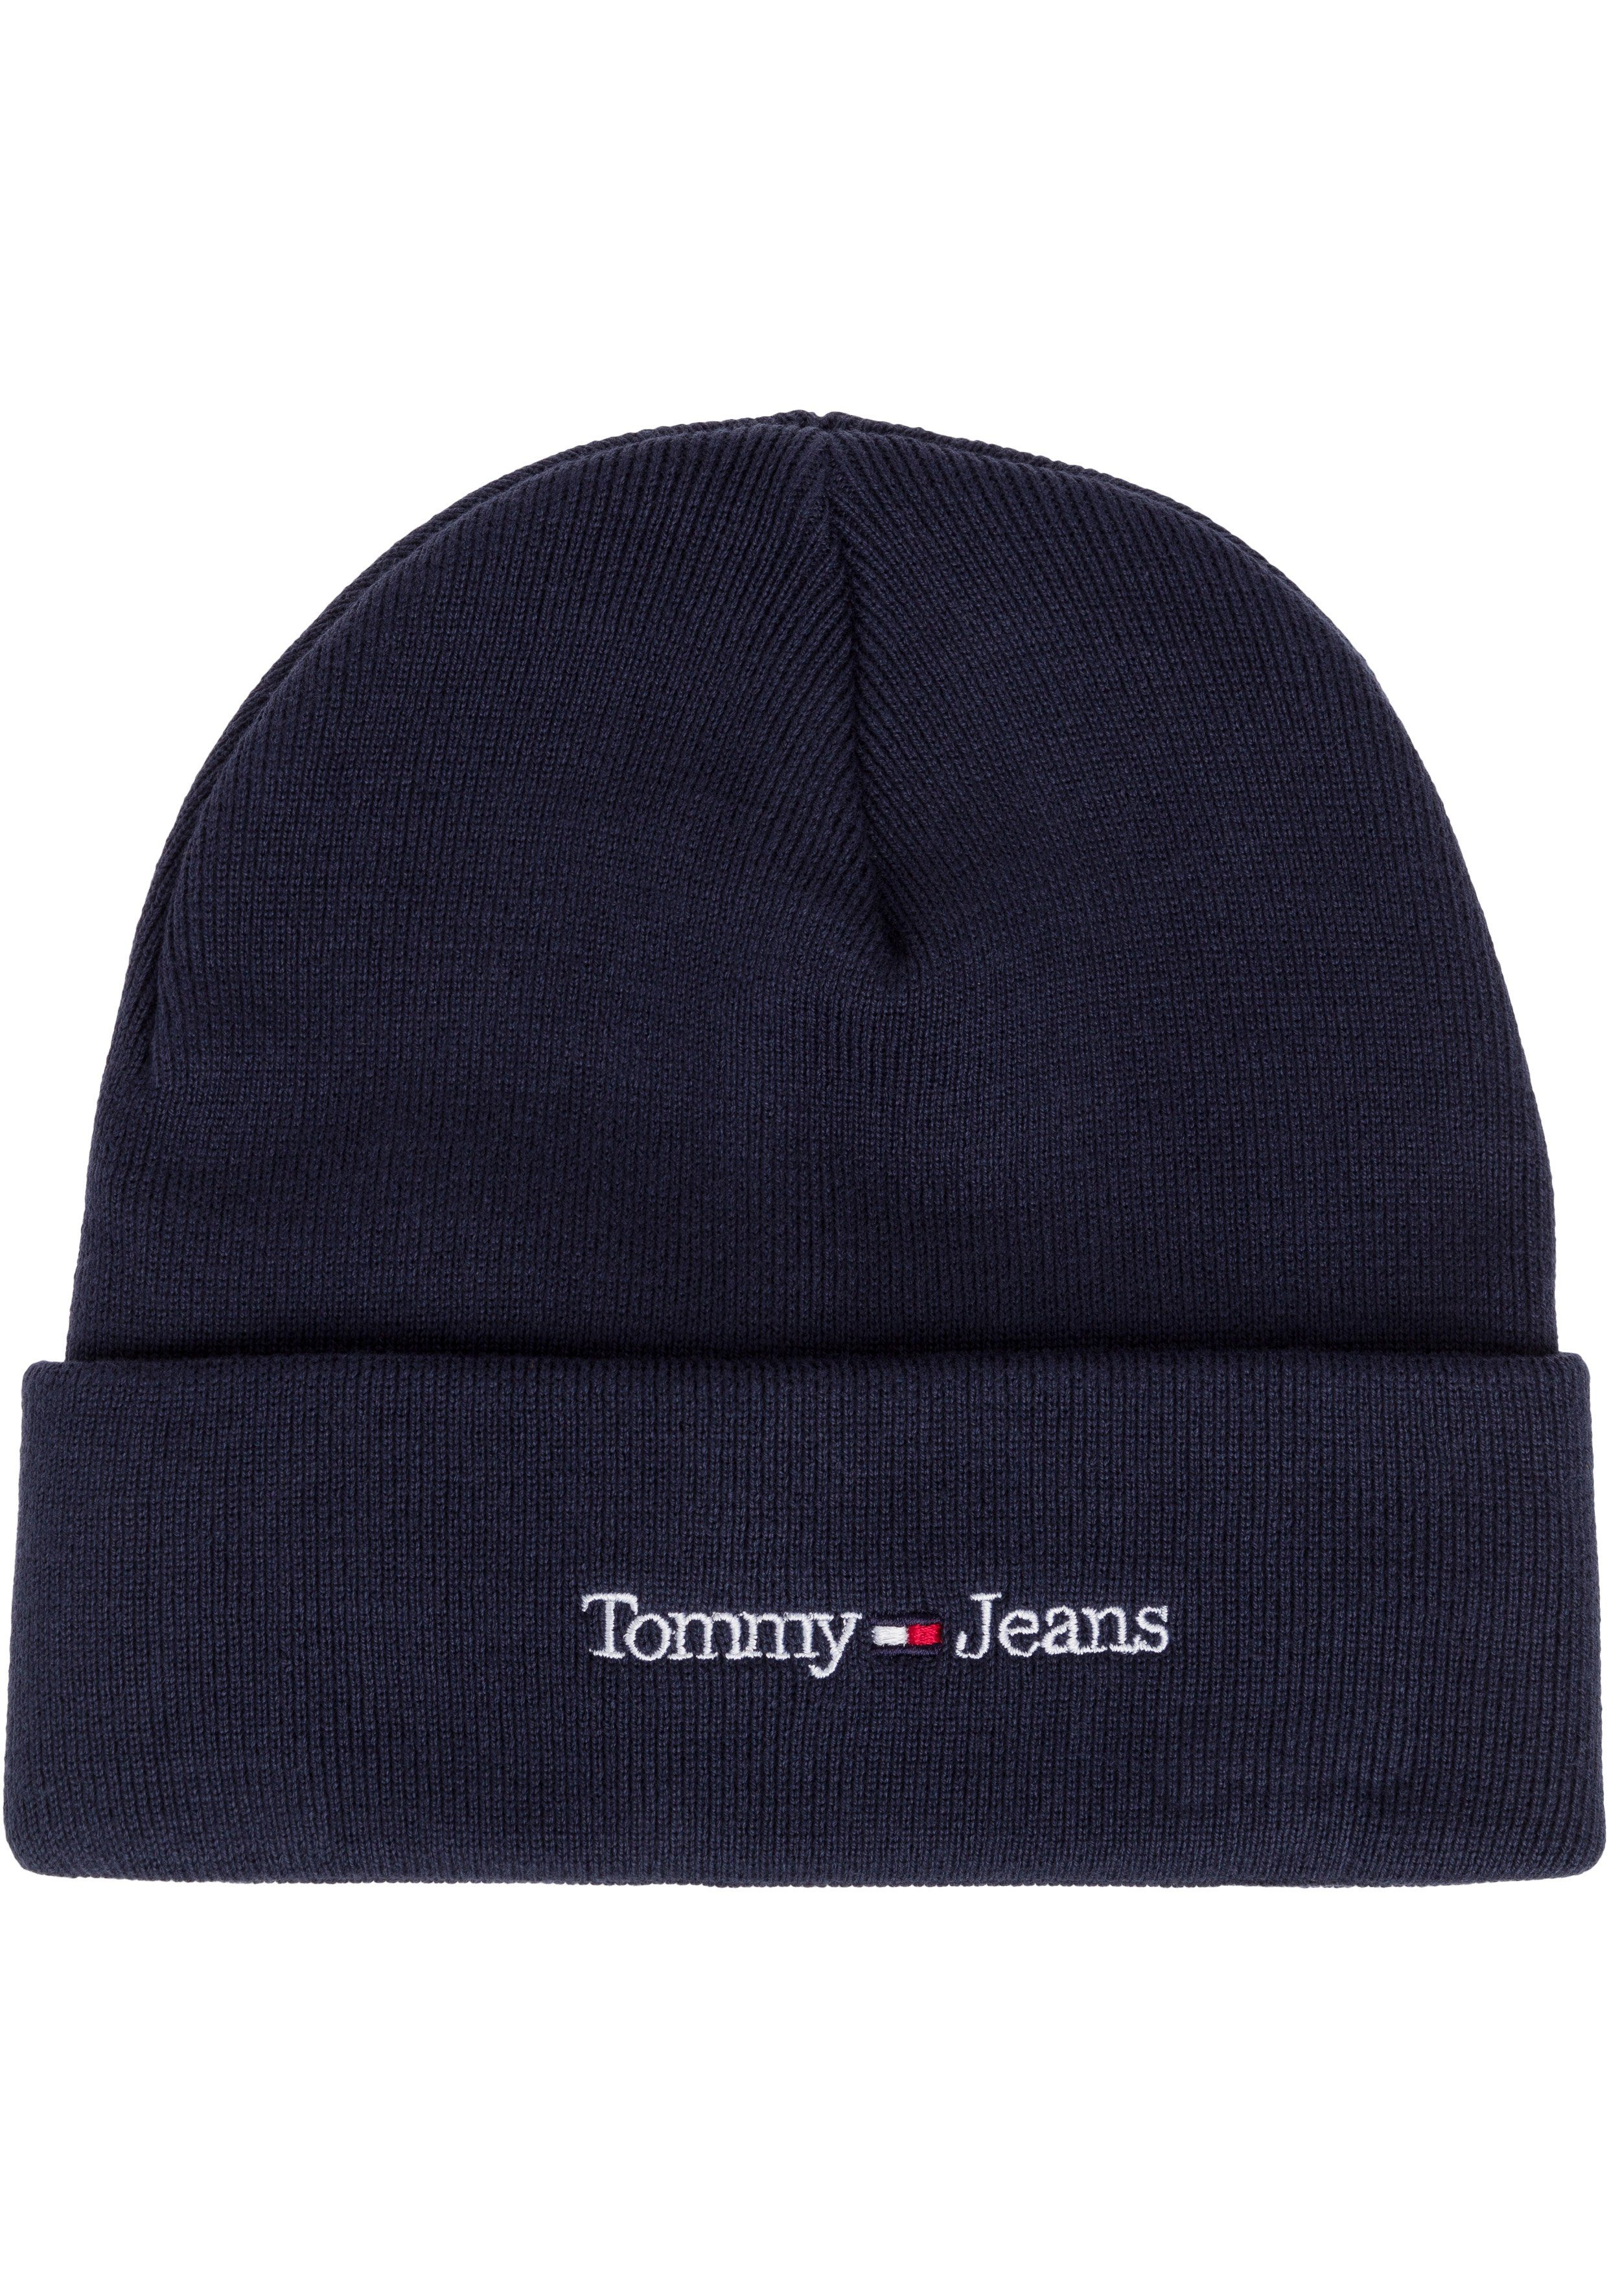 Style Tommy wärmenden Beanie cooler Jeans navy mit Eigenschaften